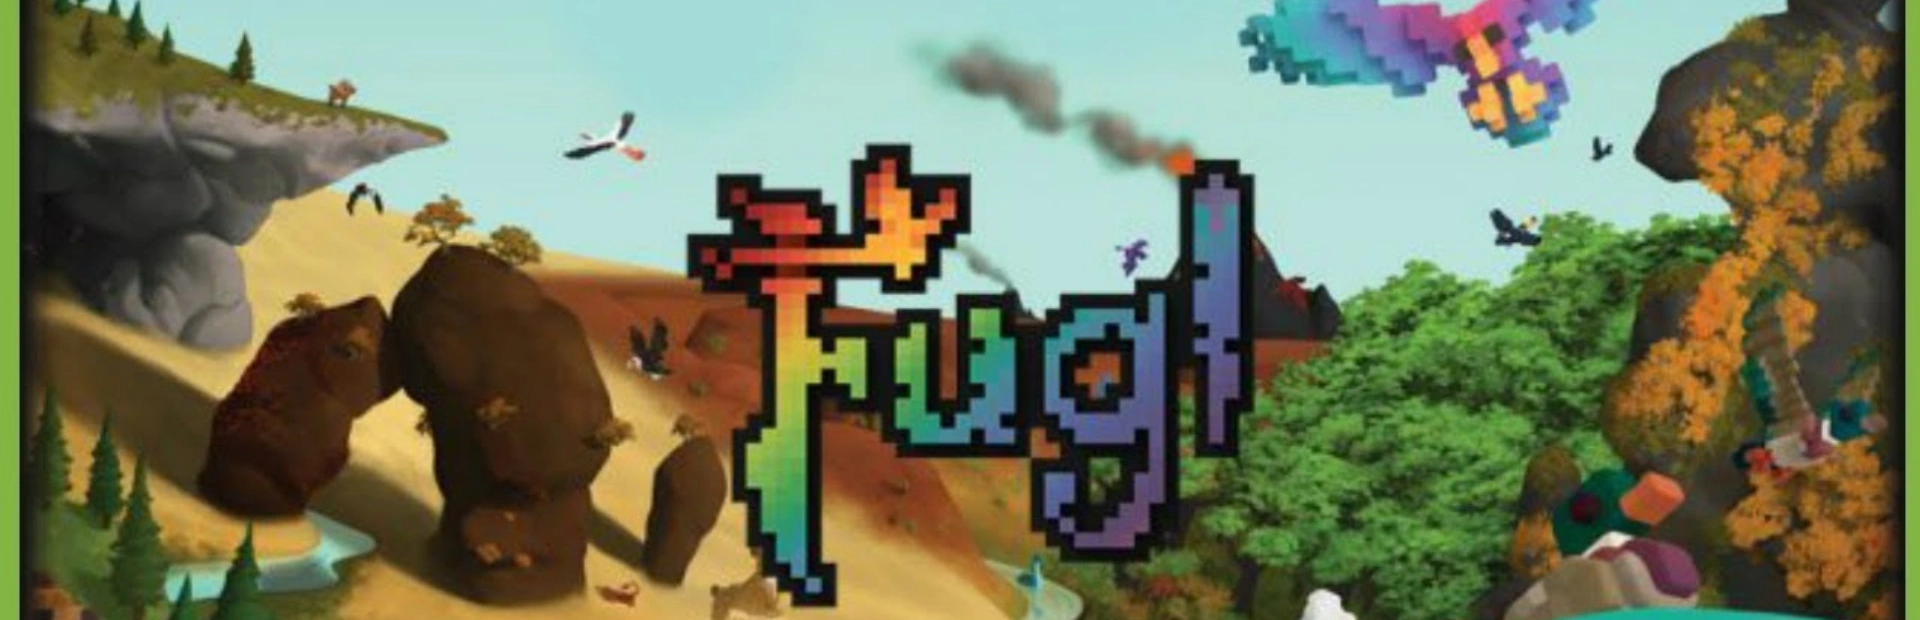 دانلود بازی Fugl برای کامپیوتر | گیمباتو